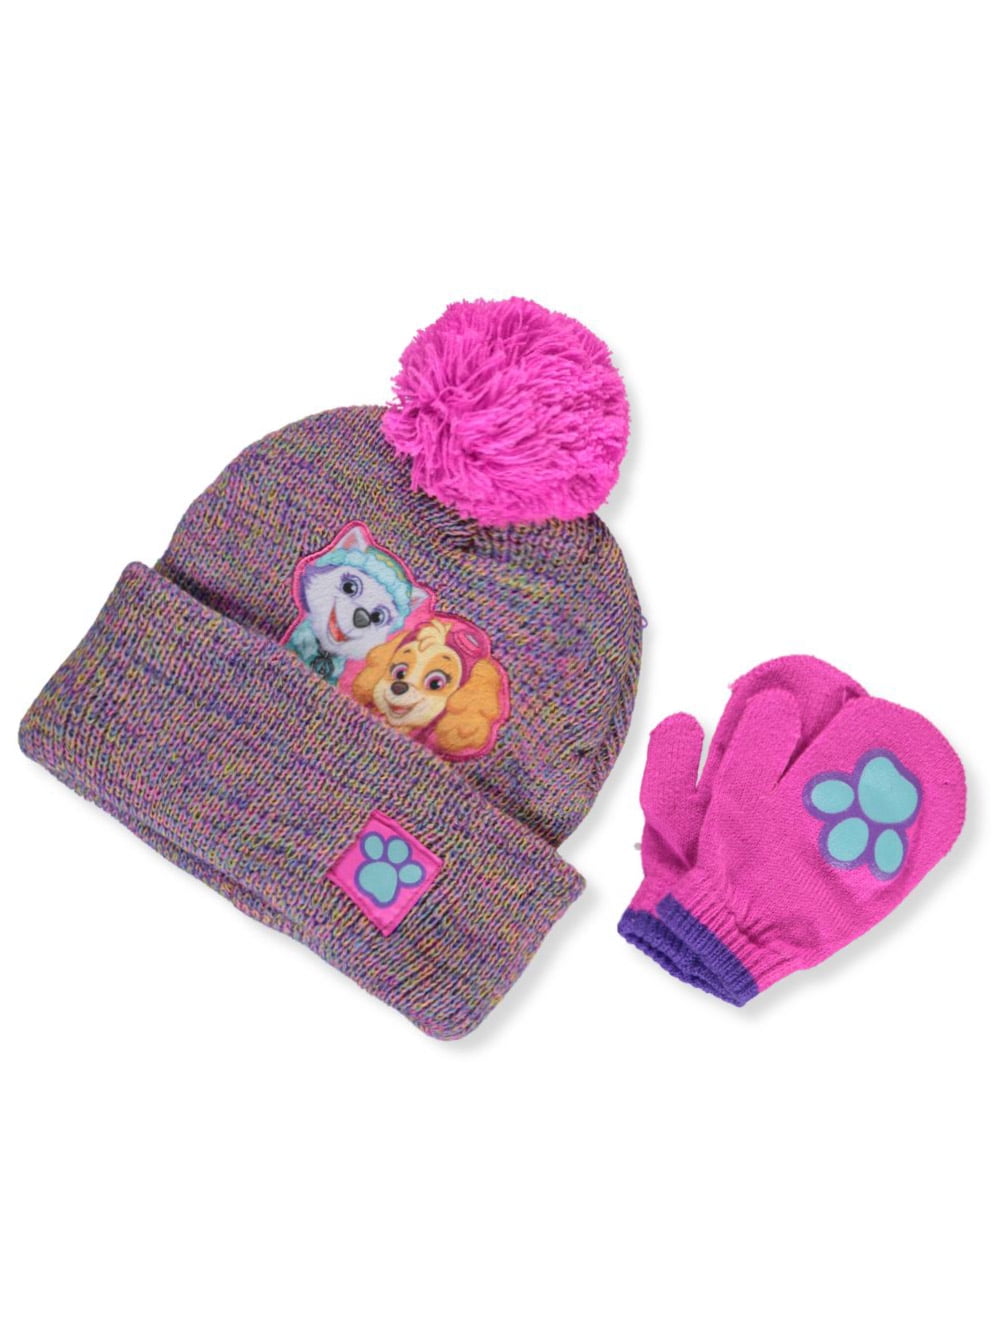 Paw Patrol Toddler Girls Winter Hat and Gloves Set Pink 